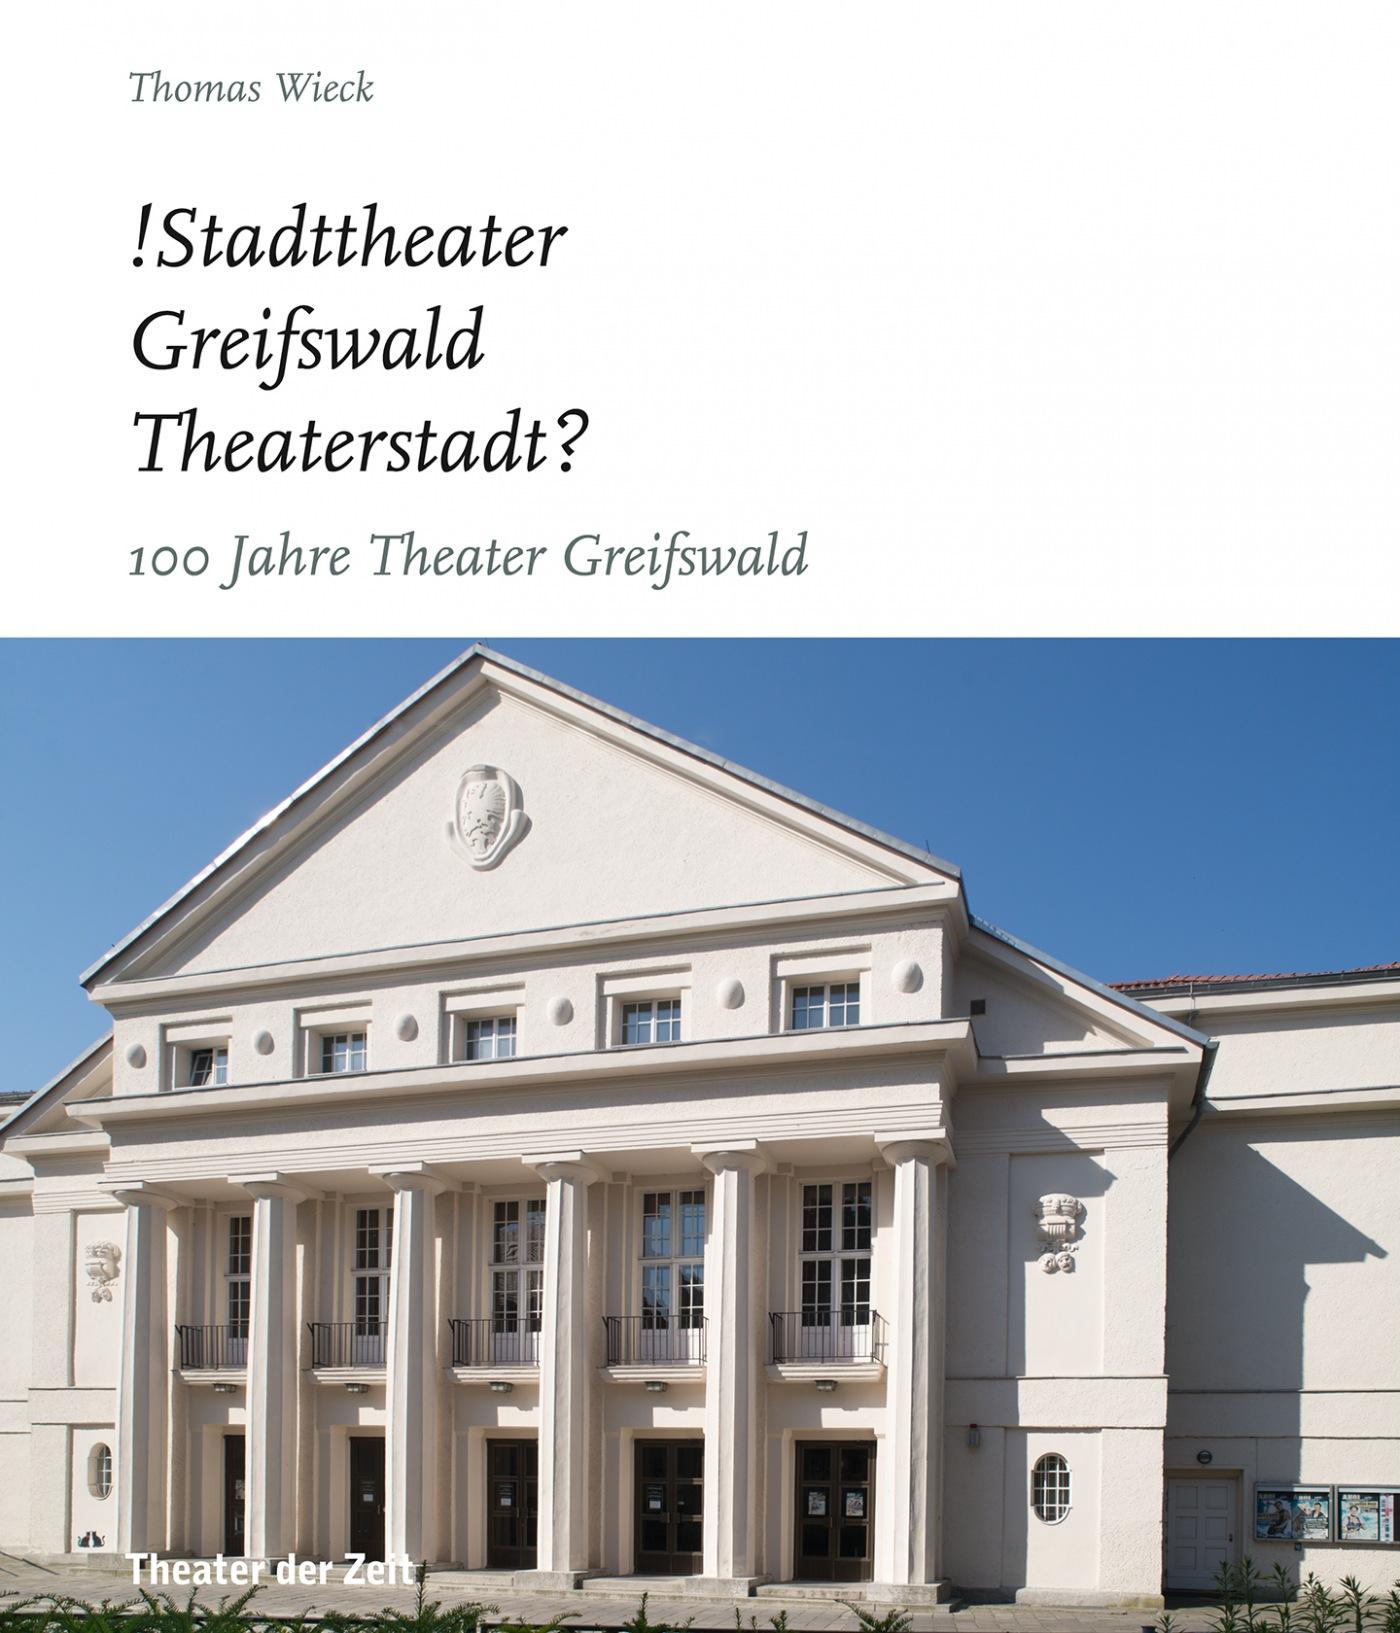 "!Stadttheater Greifswald Theaterstadt?"